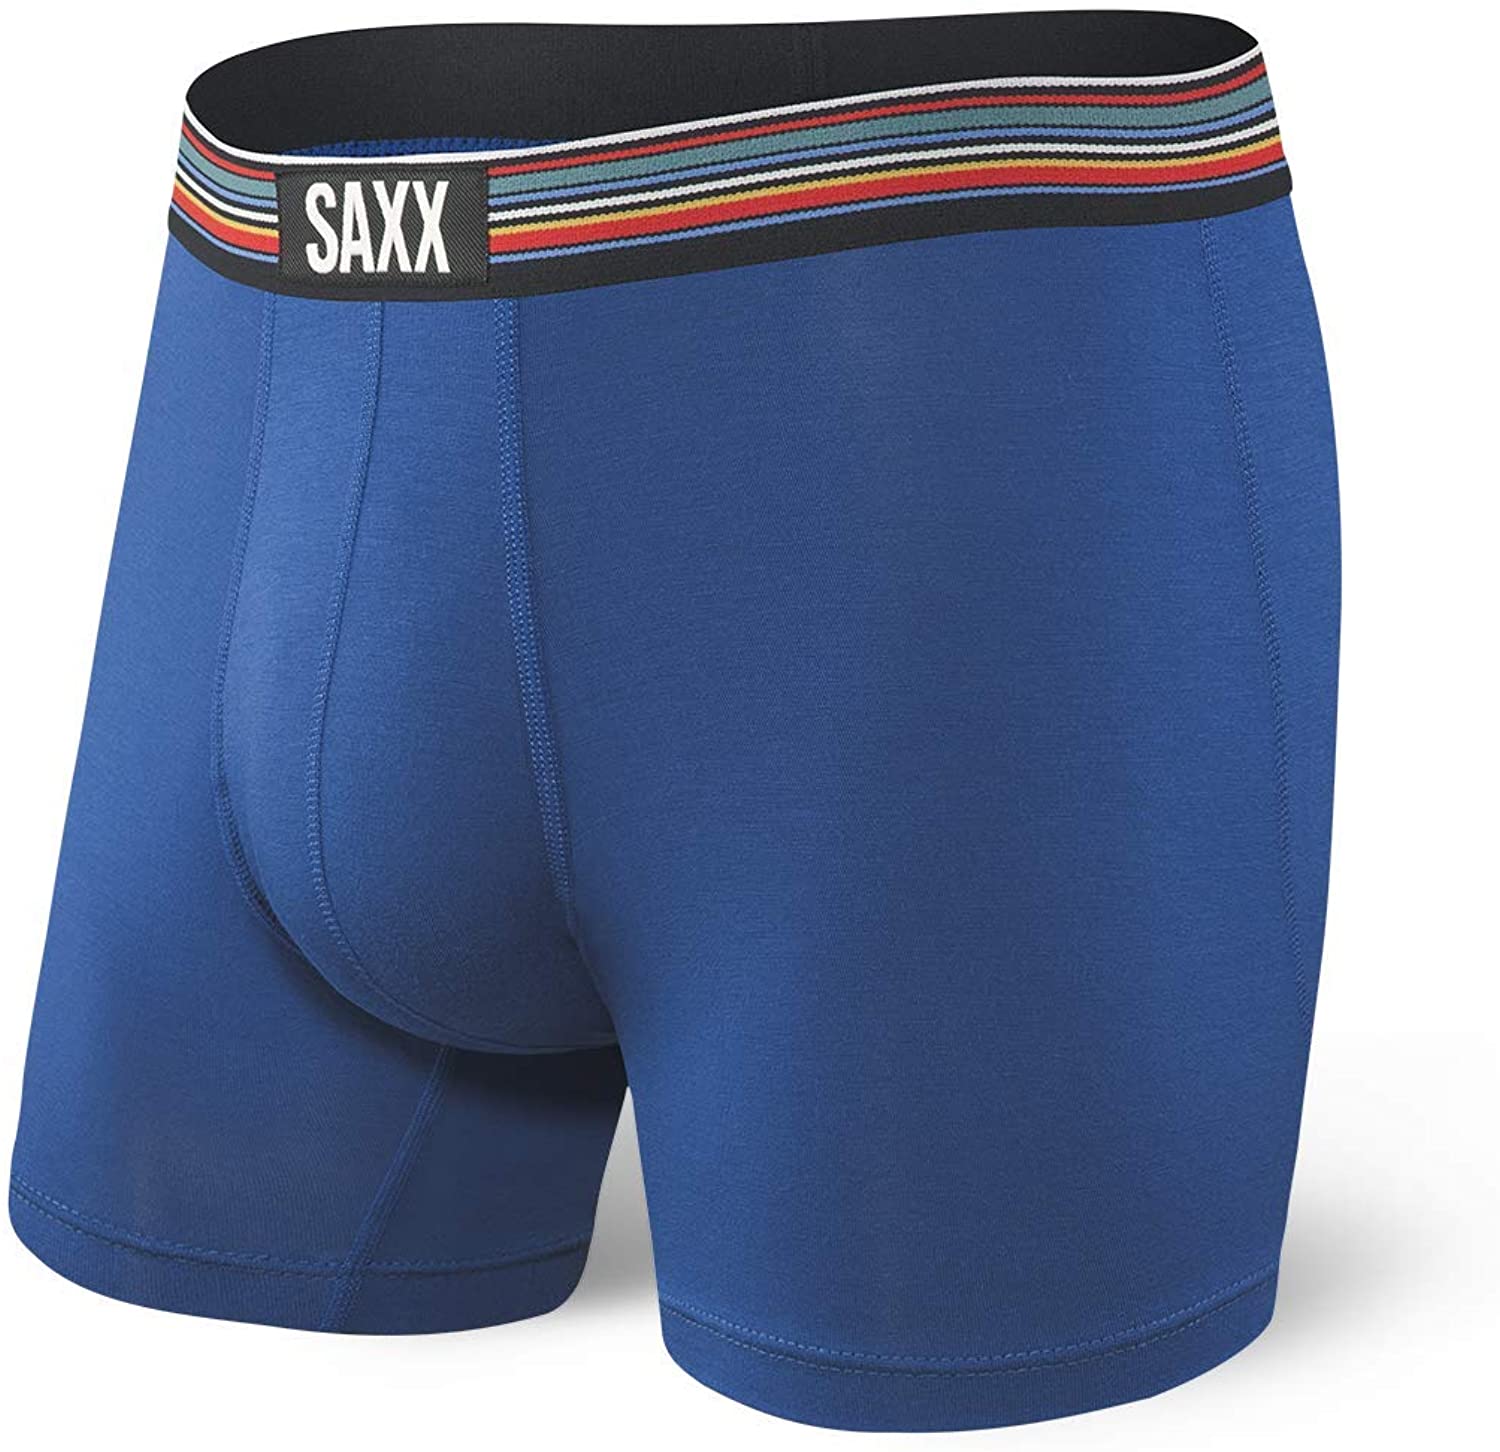 Ball Park Pouch Saxx Vibe Boxer Men Herren Underwear Boxer 5 inch Sportunterwäsche